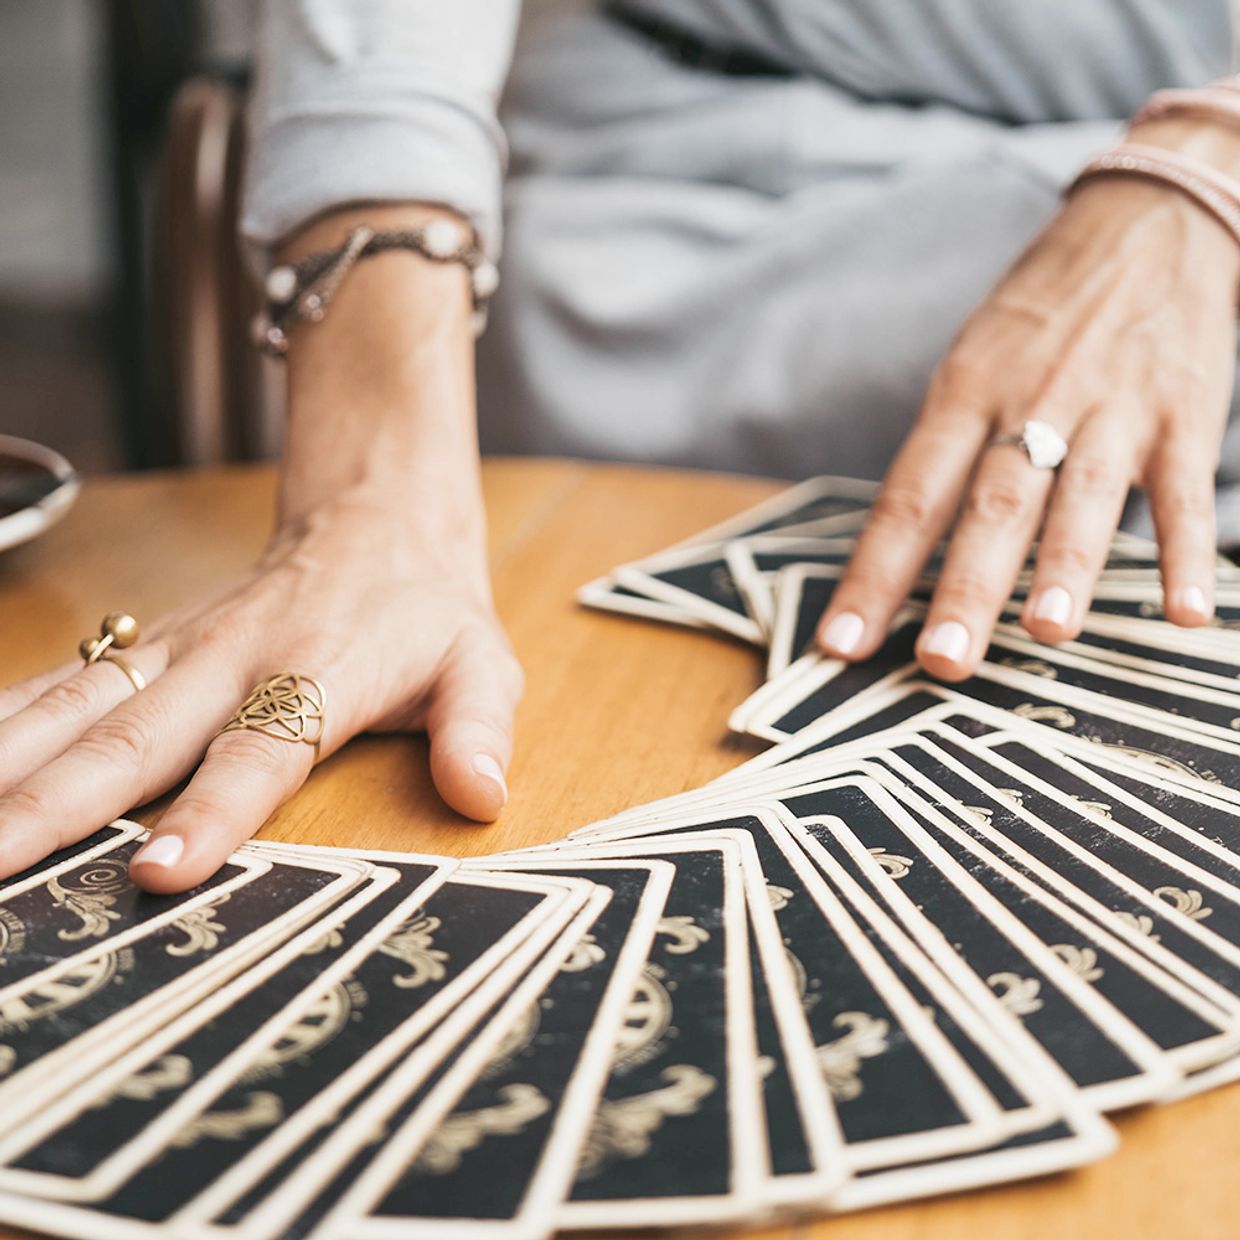 Do Tarot Cards Tell the Future?